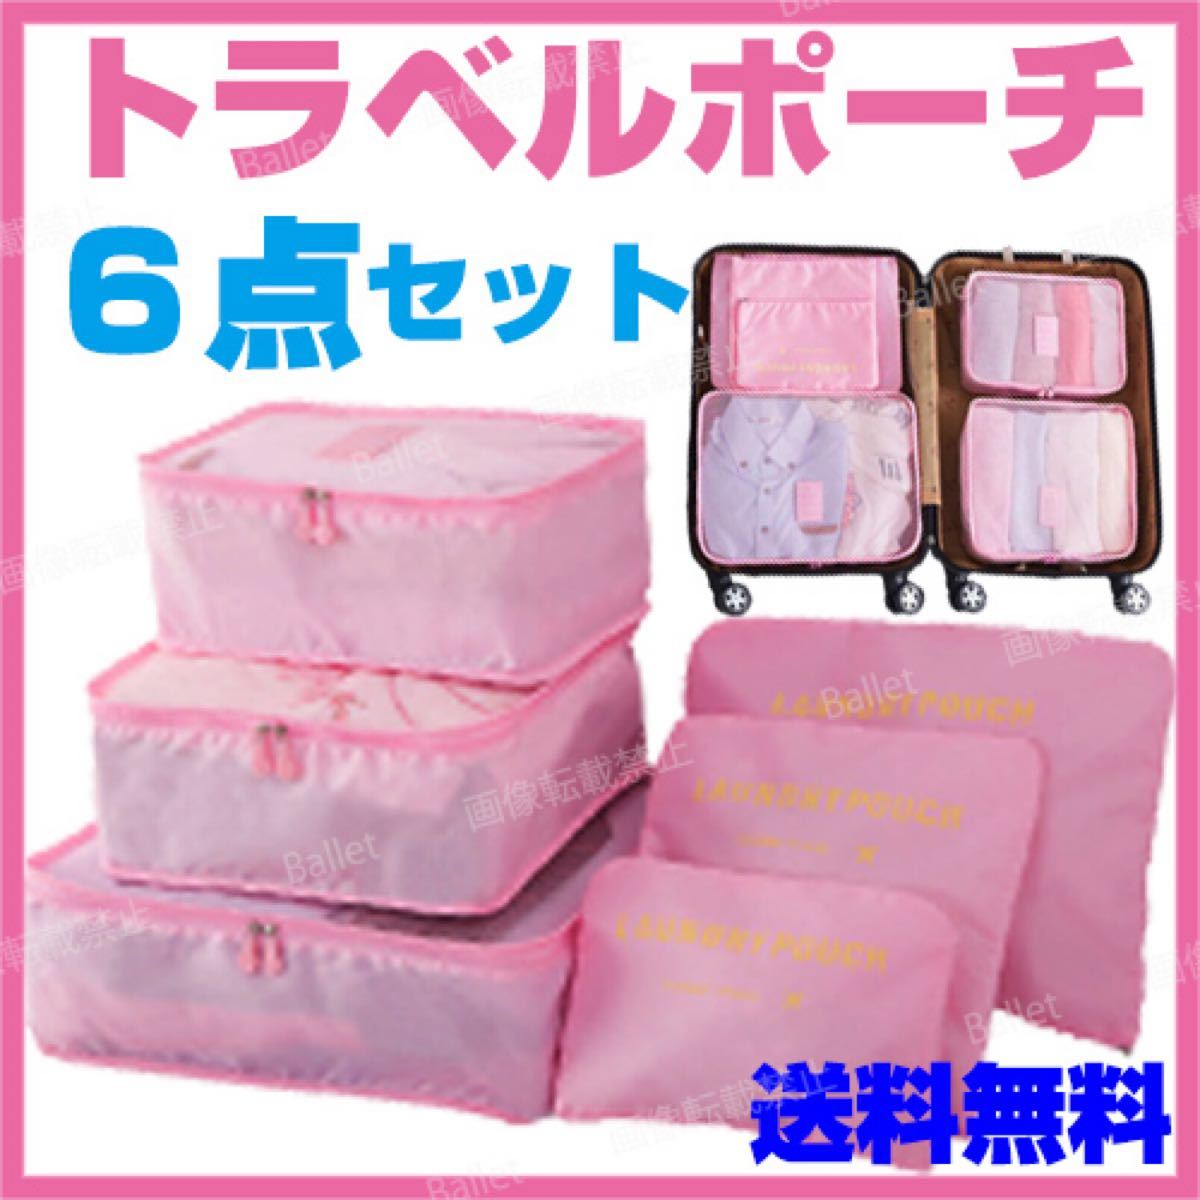 トラベルポーチ ピンク トラベルケース 旅行 収納 ポーチ バッグ スーツケース